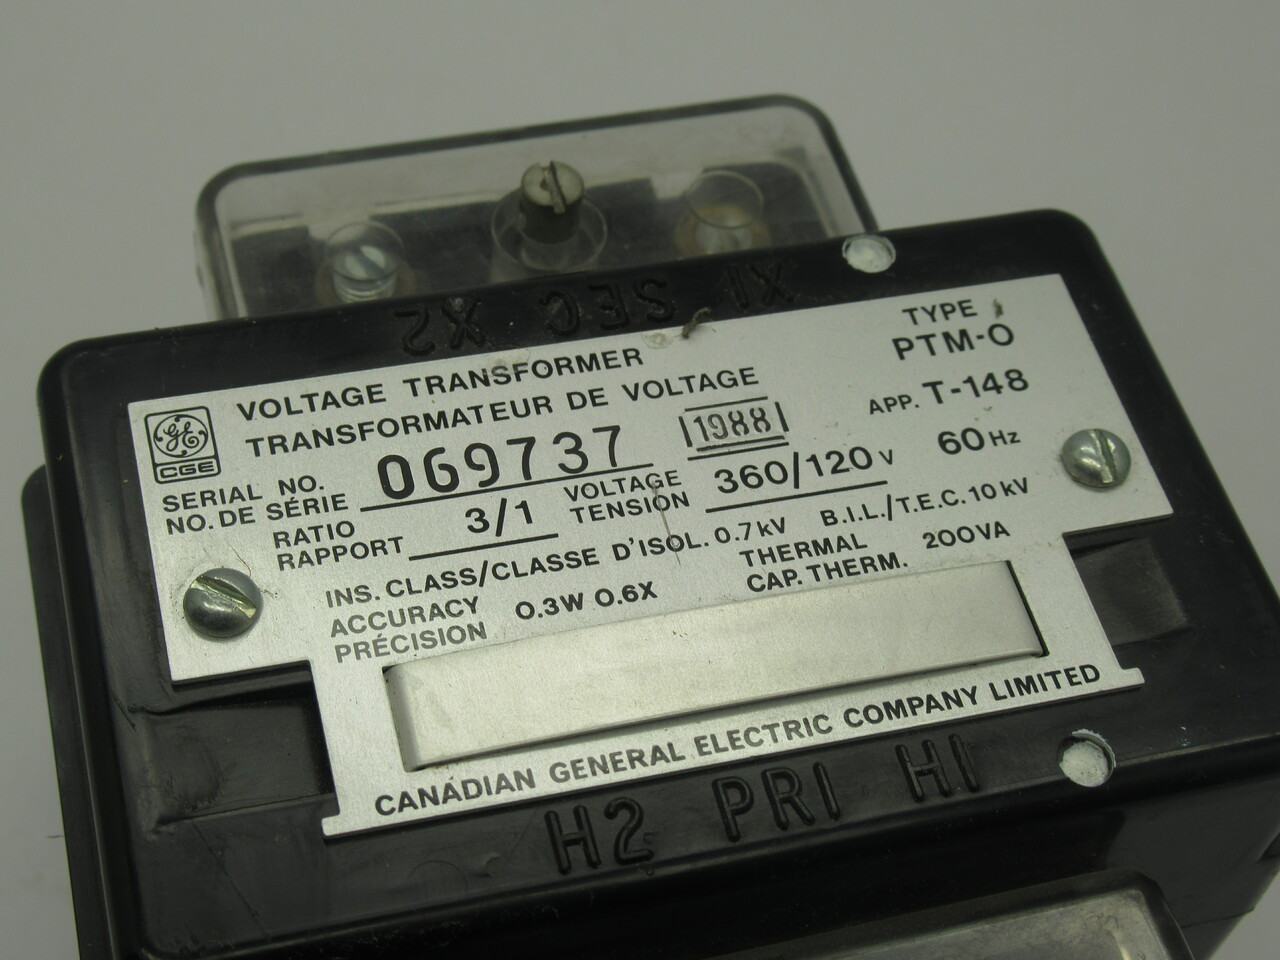 General Electric PTM-O Voltage Transformer 200VA 360-120V 60Hz 0.7kV 3:1 USED